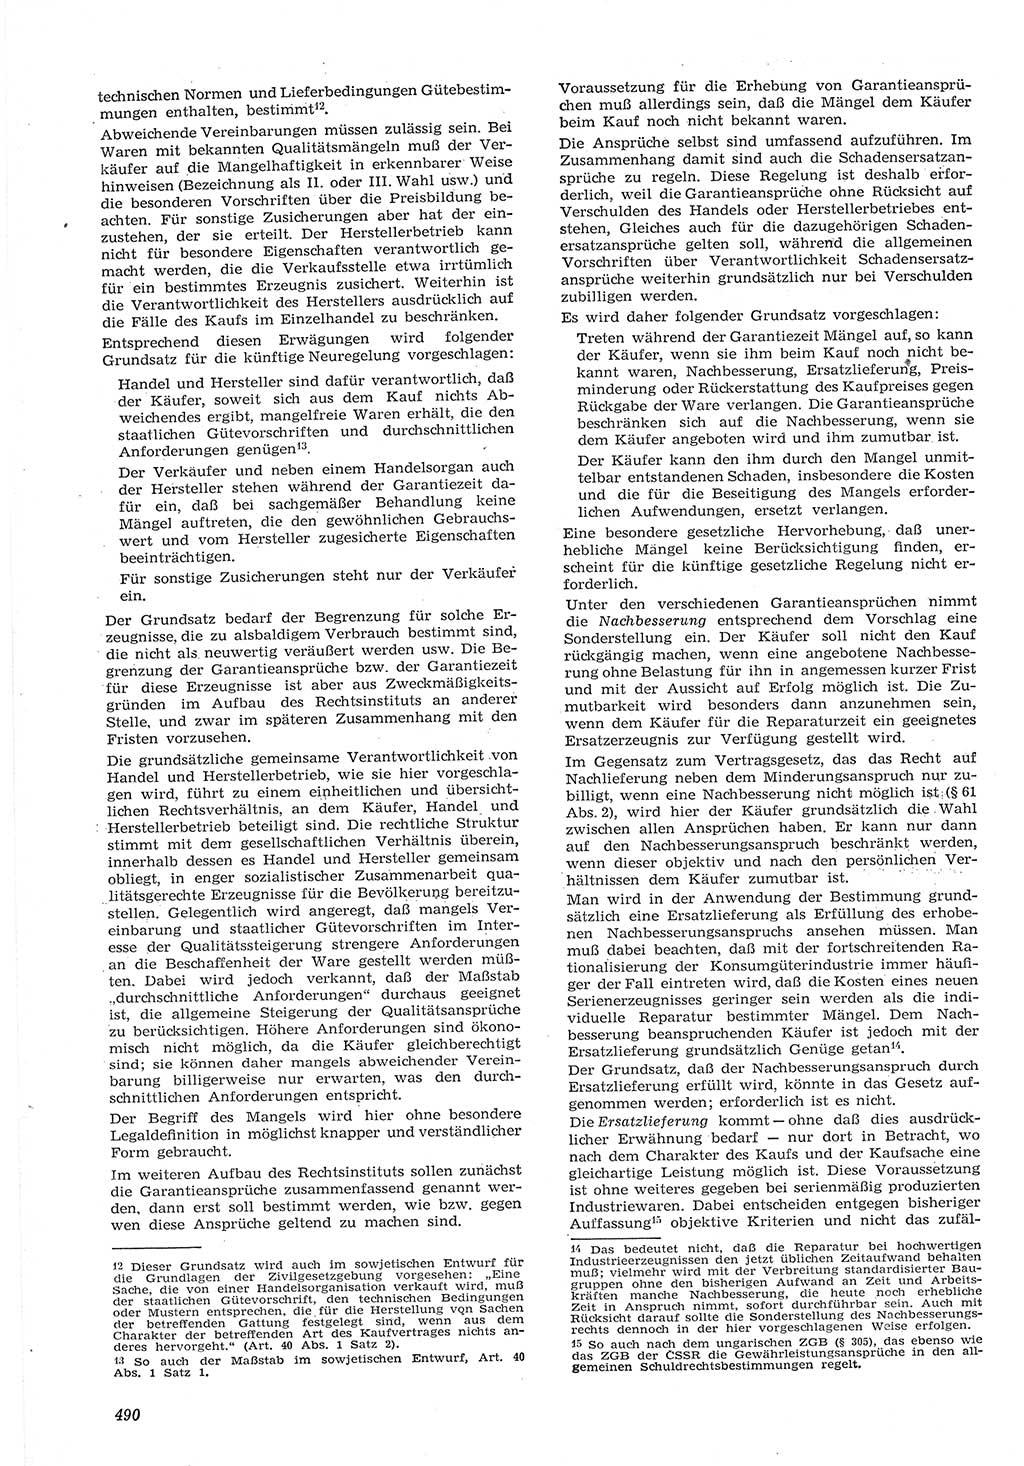 Neue Justiz (NJ), Zeitschrift für Recht und Rechtswissenschaft [Deutsche Demokratische Republik (DDR)], 15. Jahrgang 1961, Seite 490 (NJ DDR 1961, S. 490)